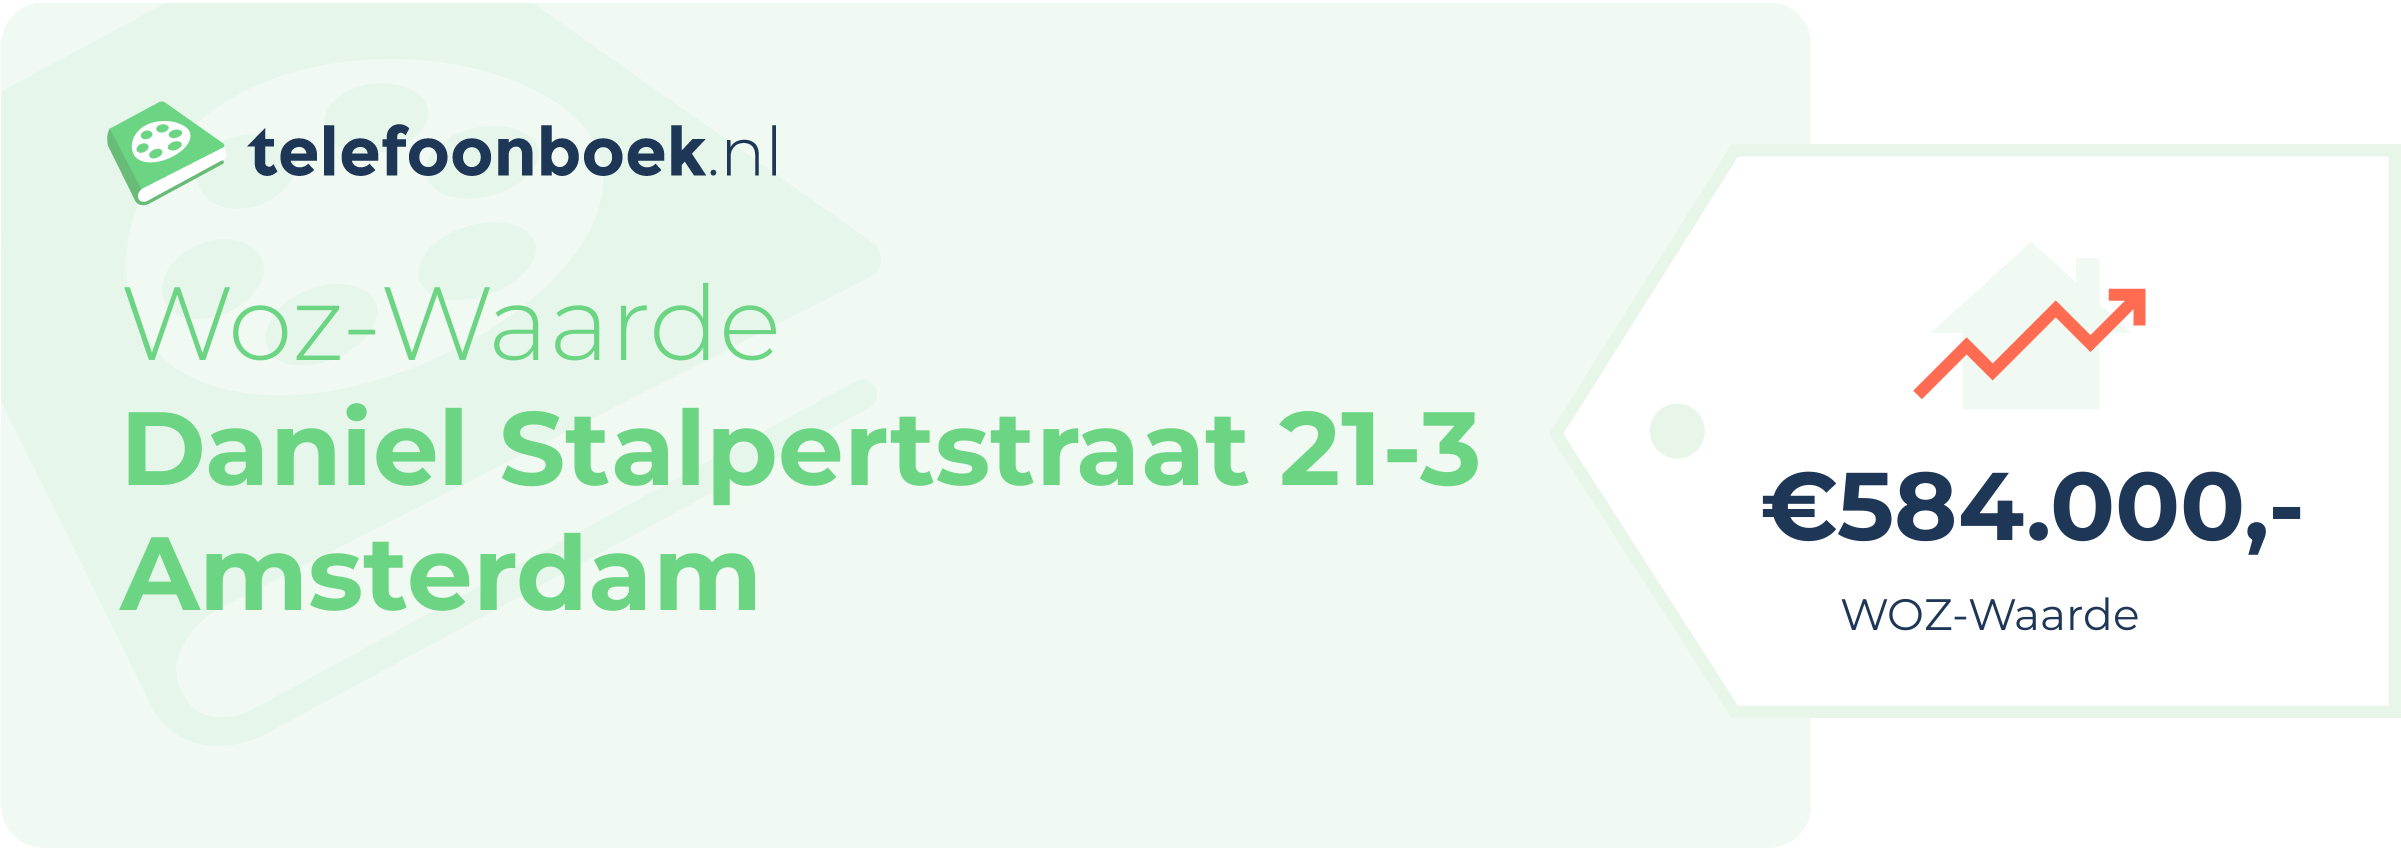 WOZ-waarde Daniel Stalpertstraat 21-3 Amsterdam